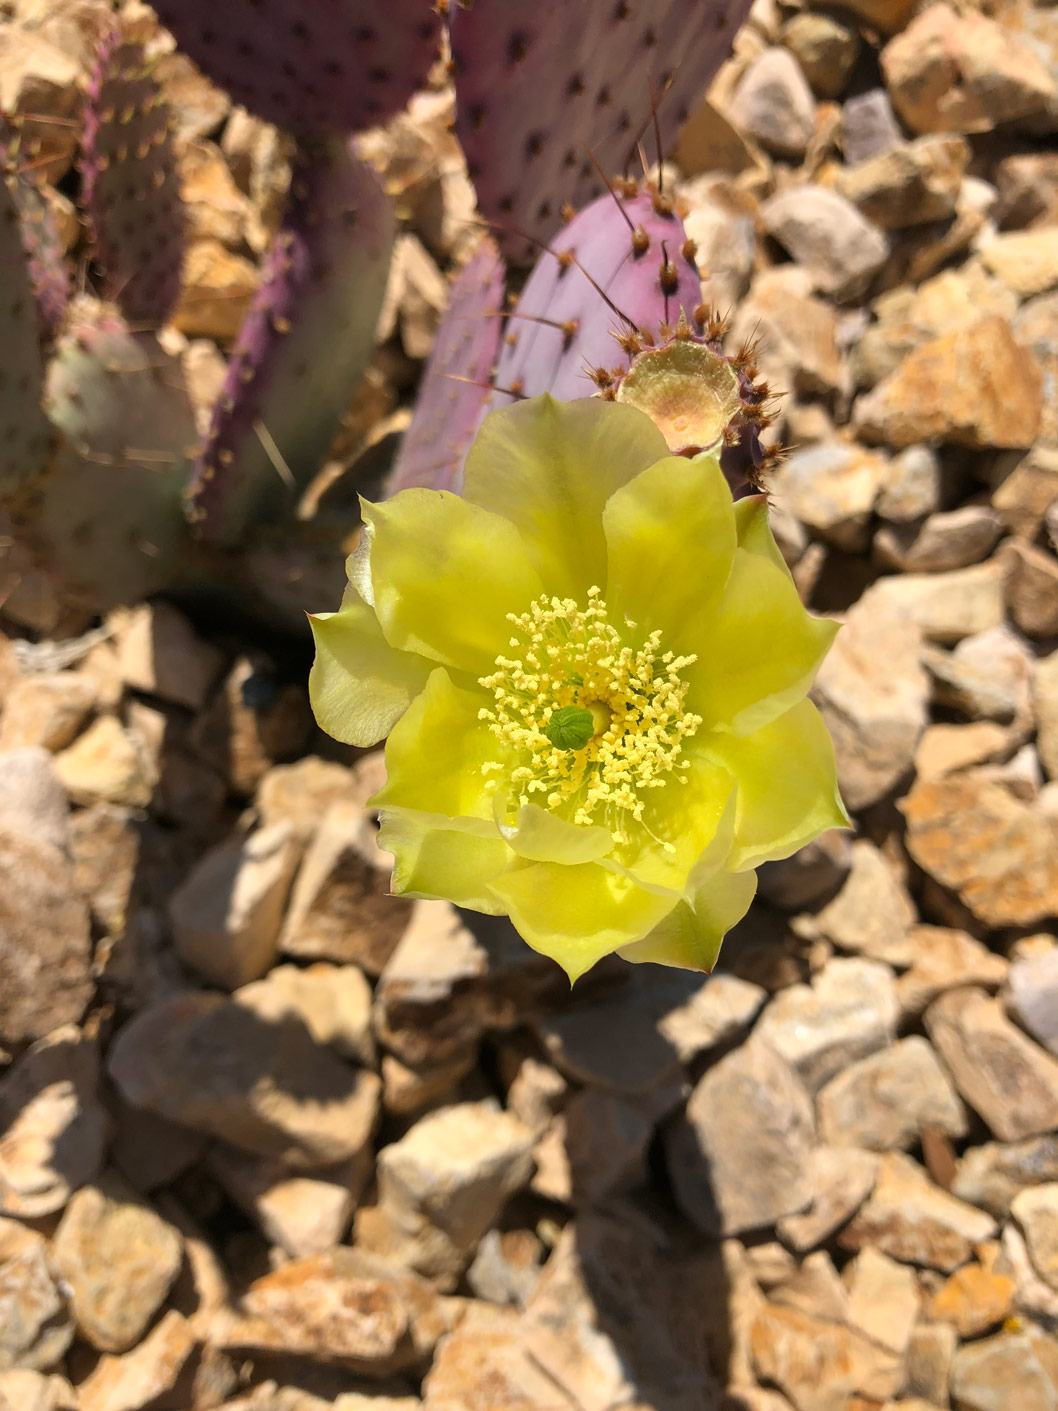 The yellow bloom of the Santa Rita Prickly Pear cactus.